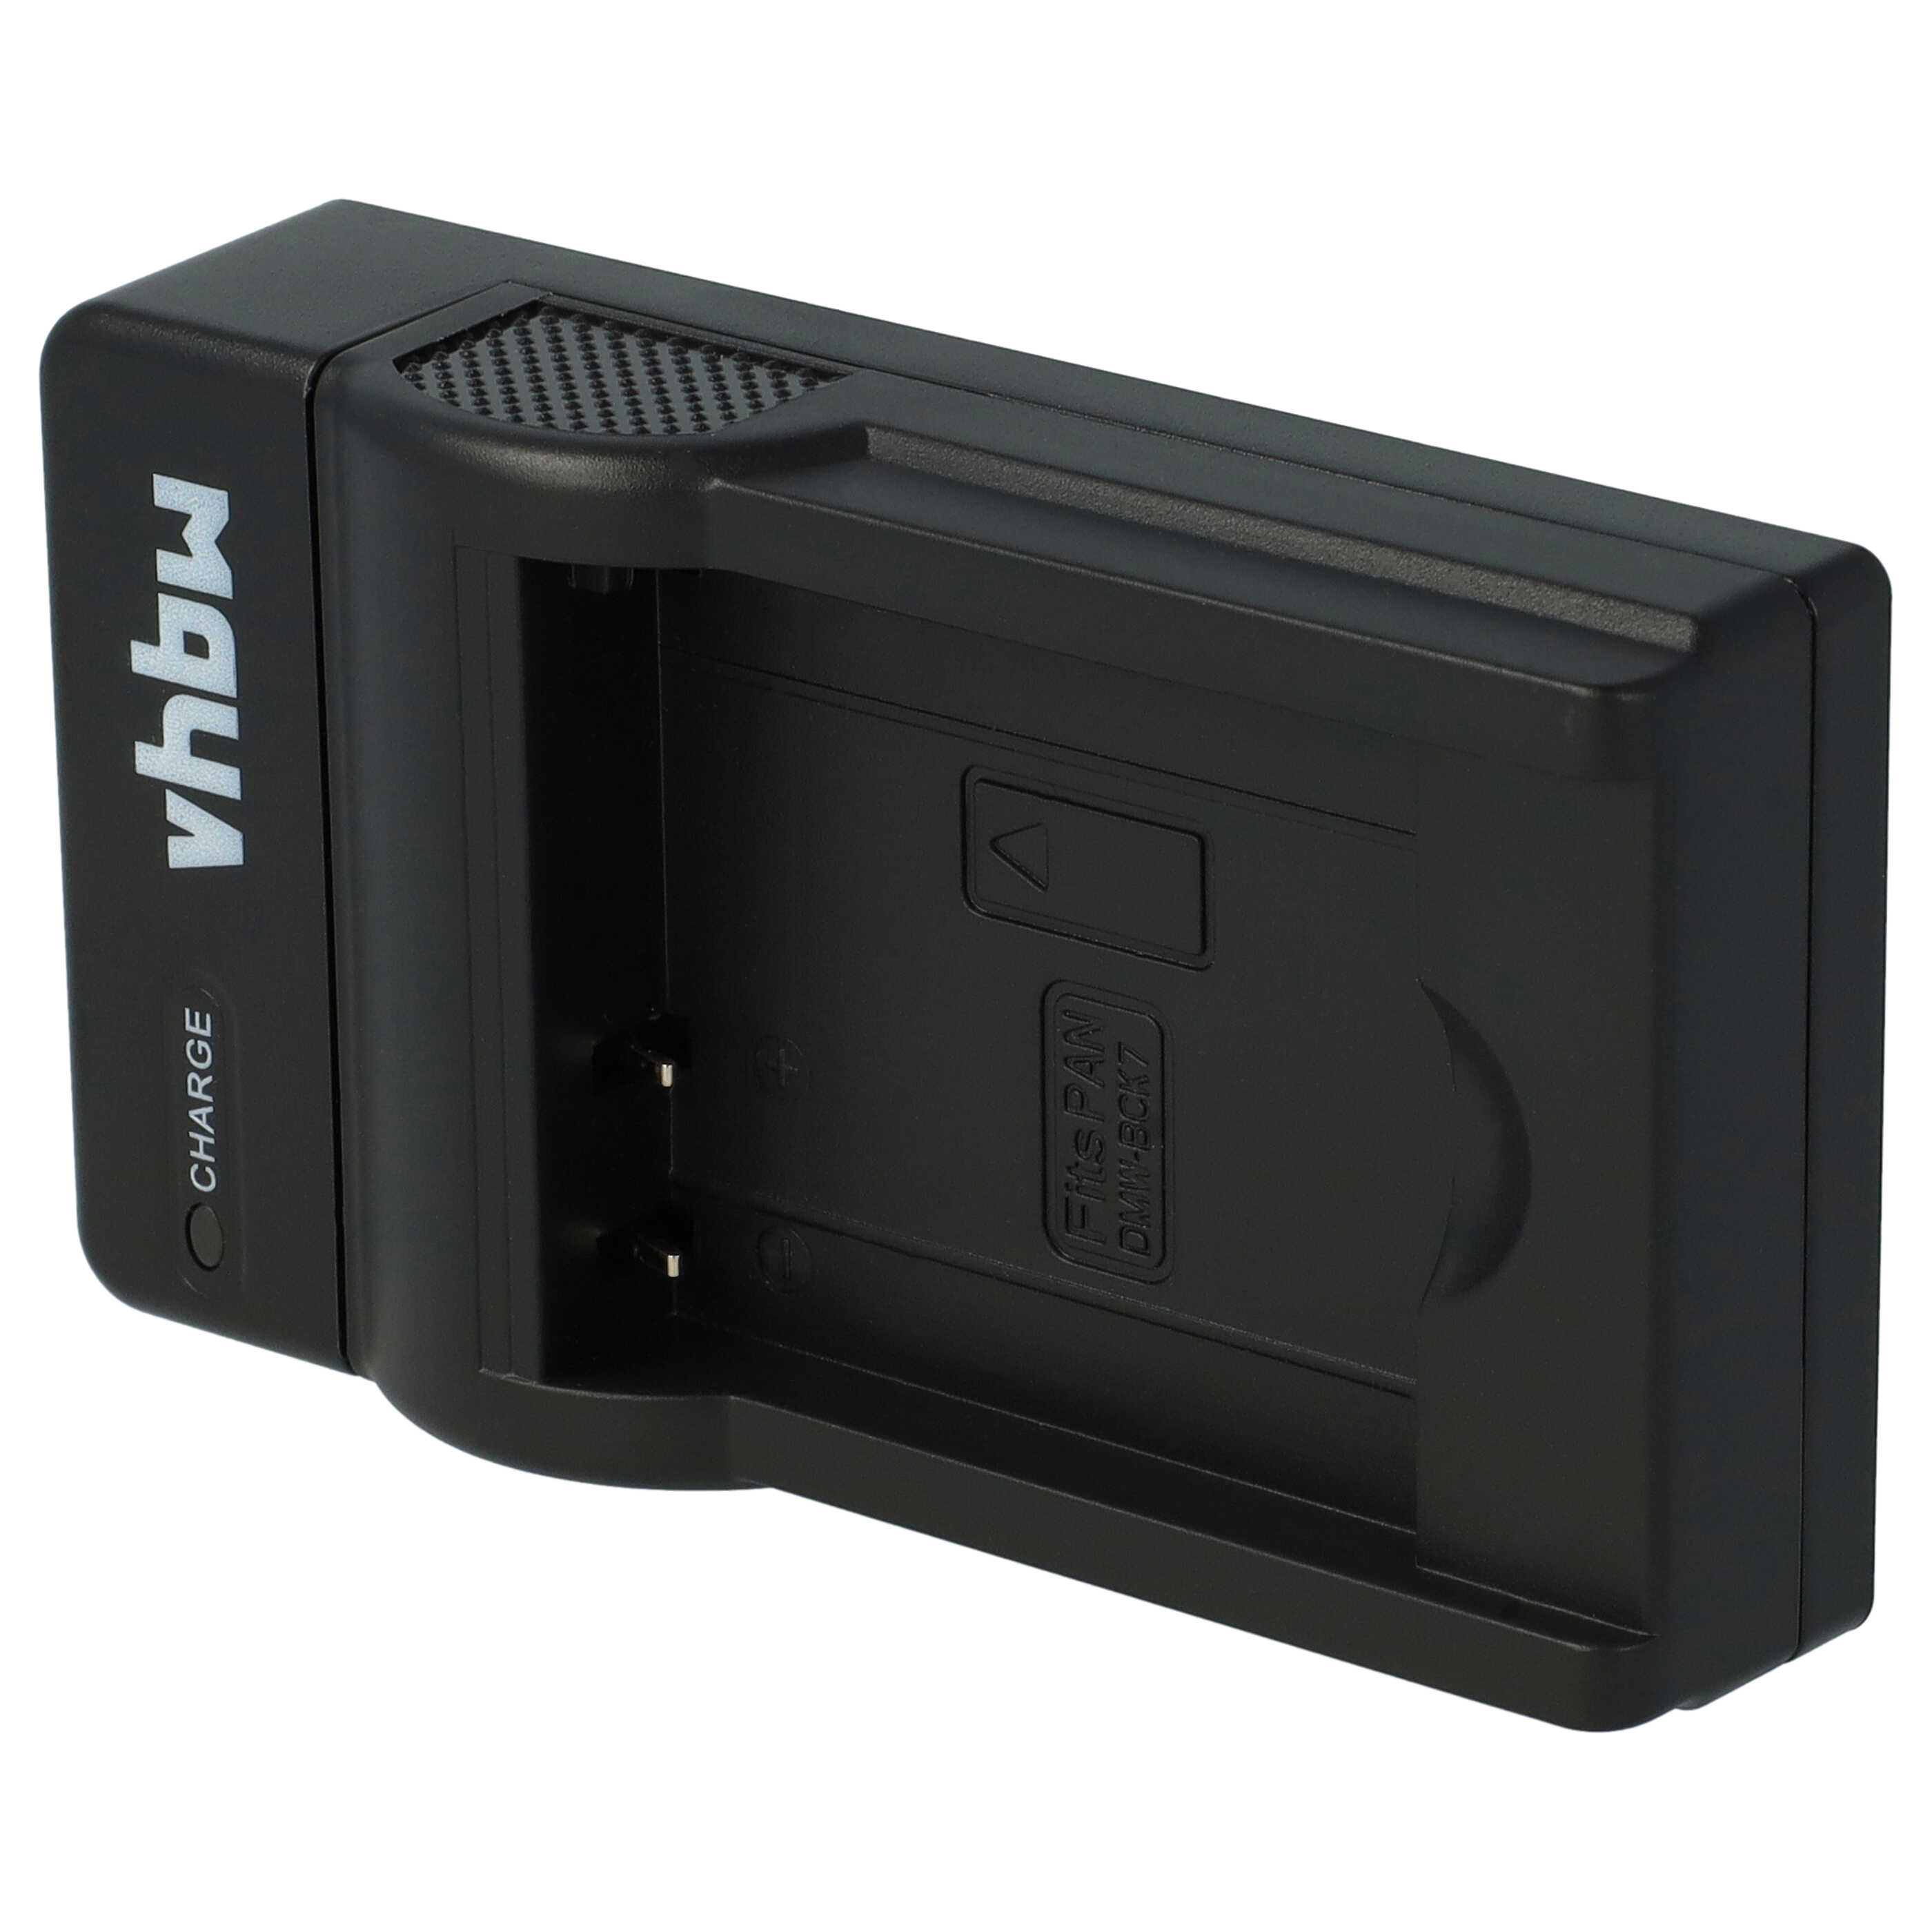 Caricabatterie per fotocamera Lumix - 0,5A 4,2V 38cm